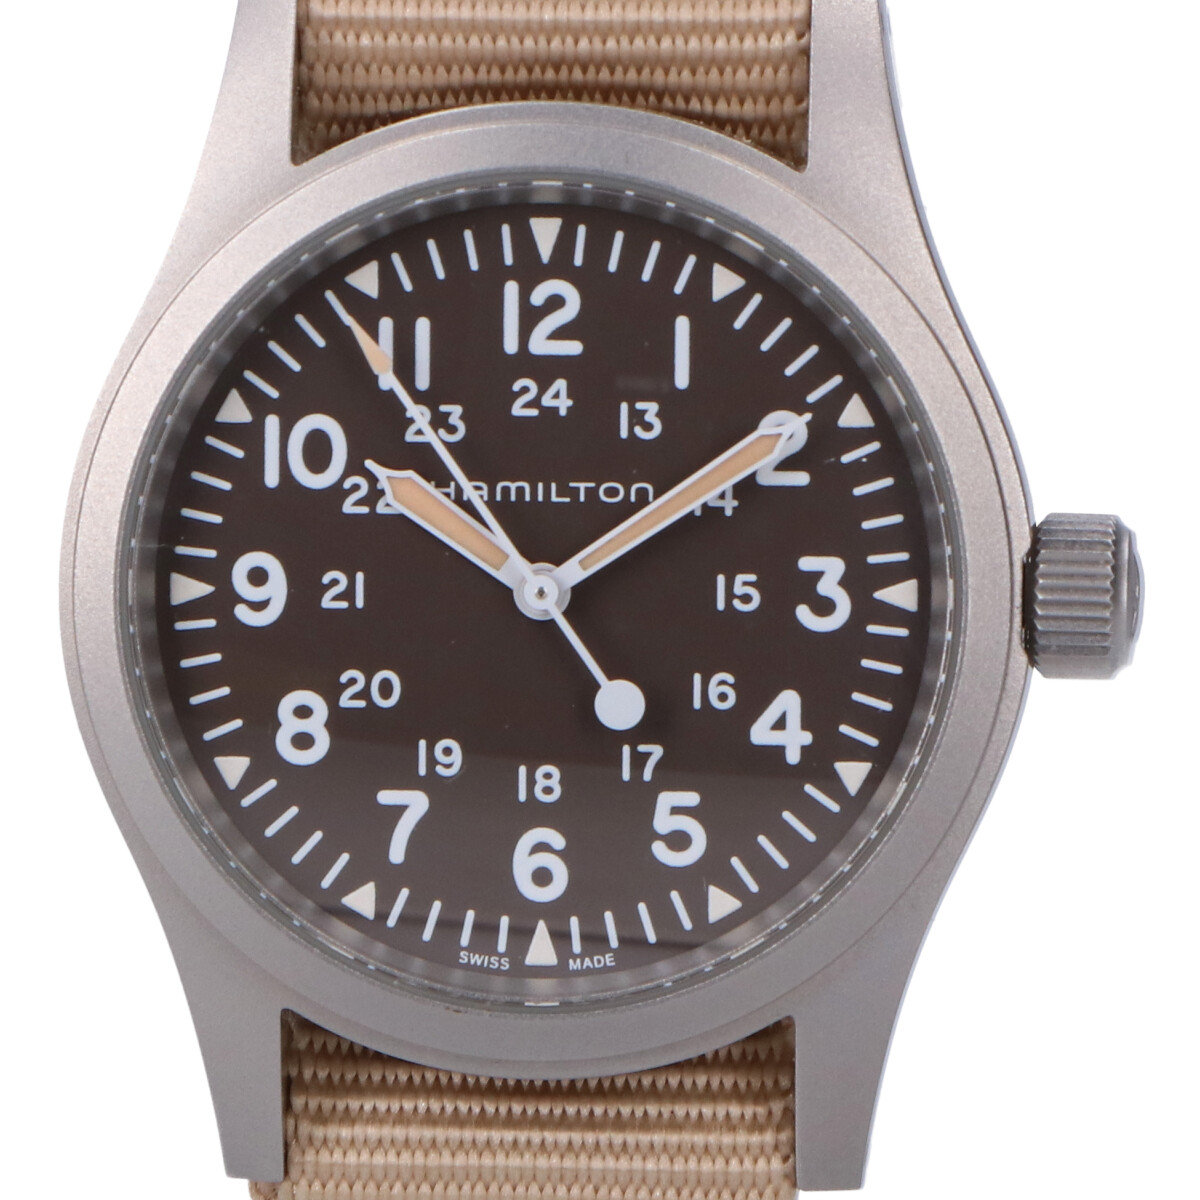 ハミルトンのH69439901 カーキフィールド メカニカル 手巻き 腕時計の買取実績です。